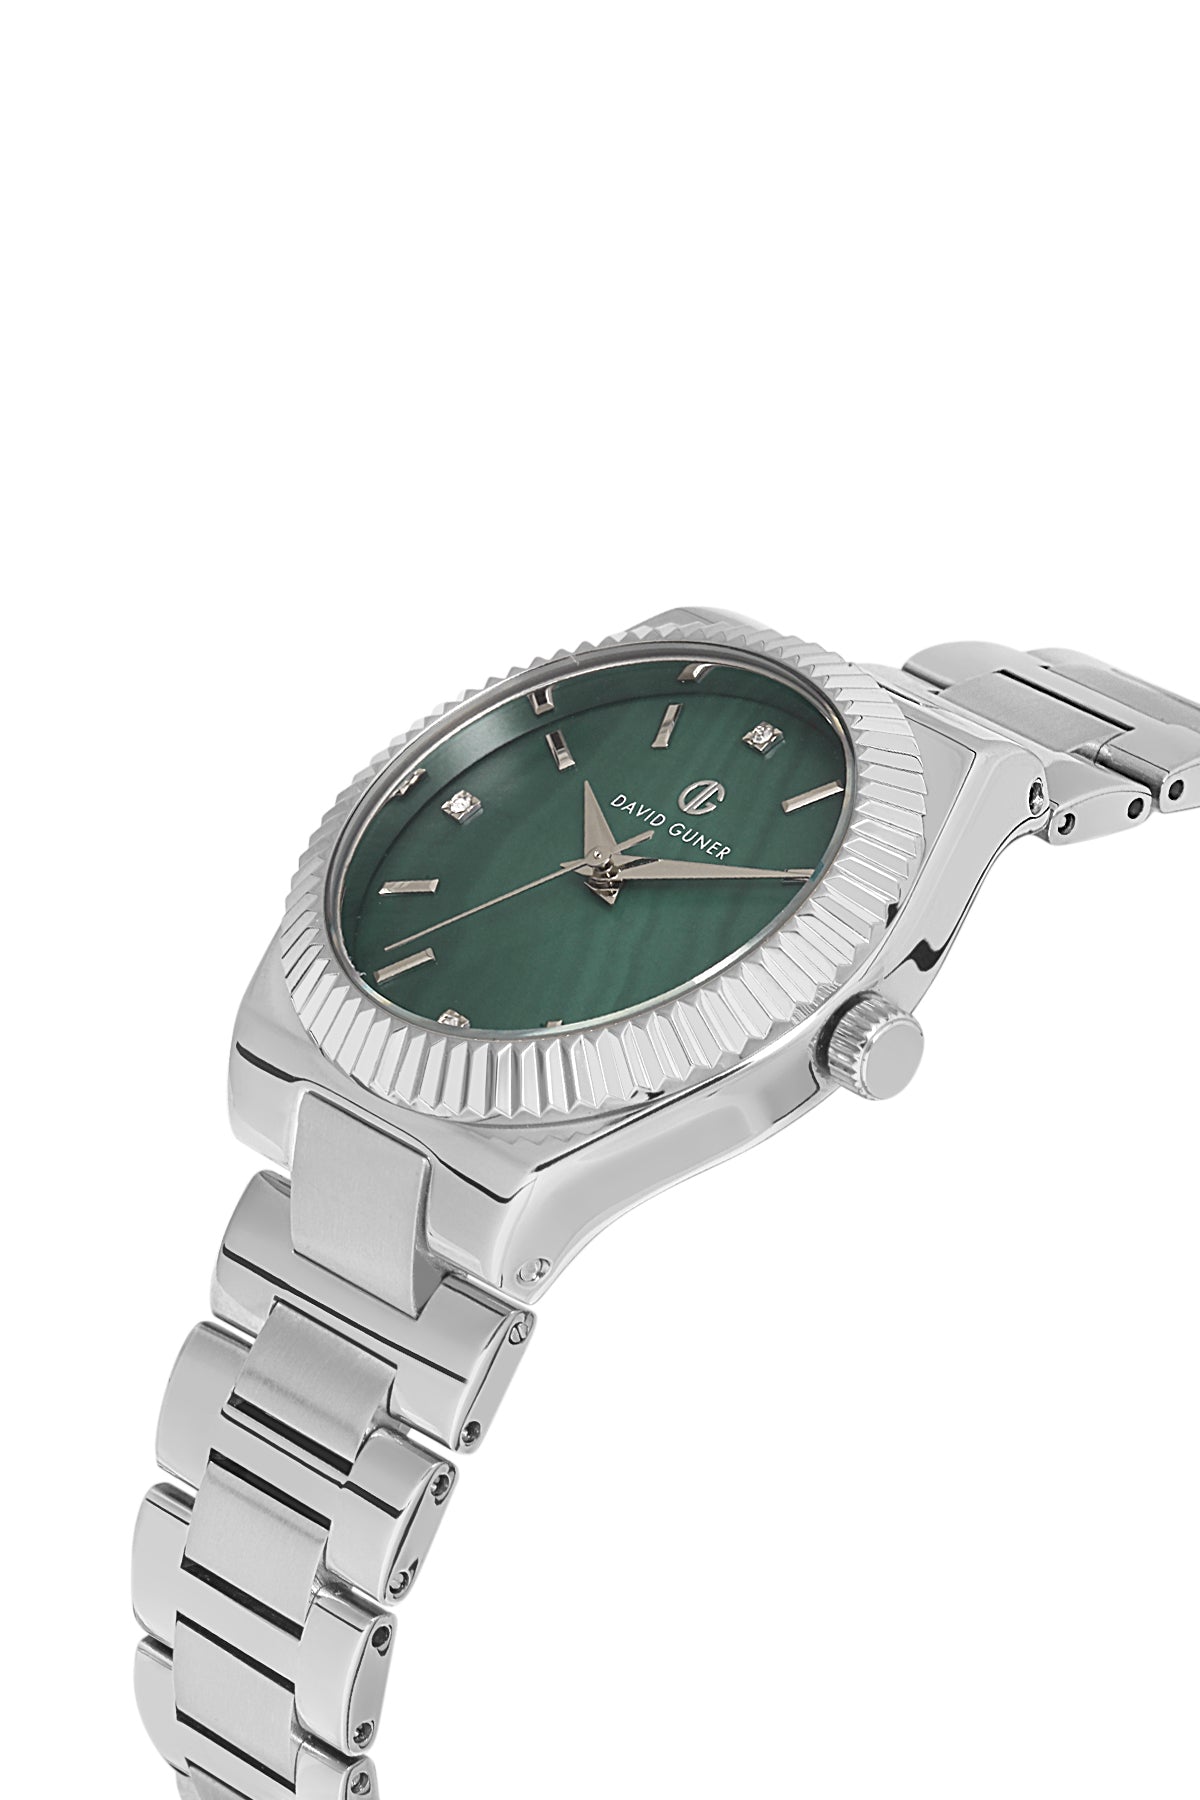 DAVID GUNER Silver Plated Green Dial Women's Wristwatch